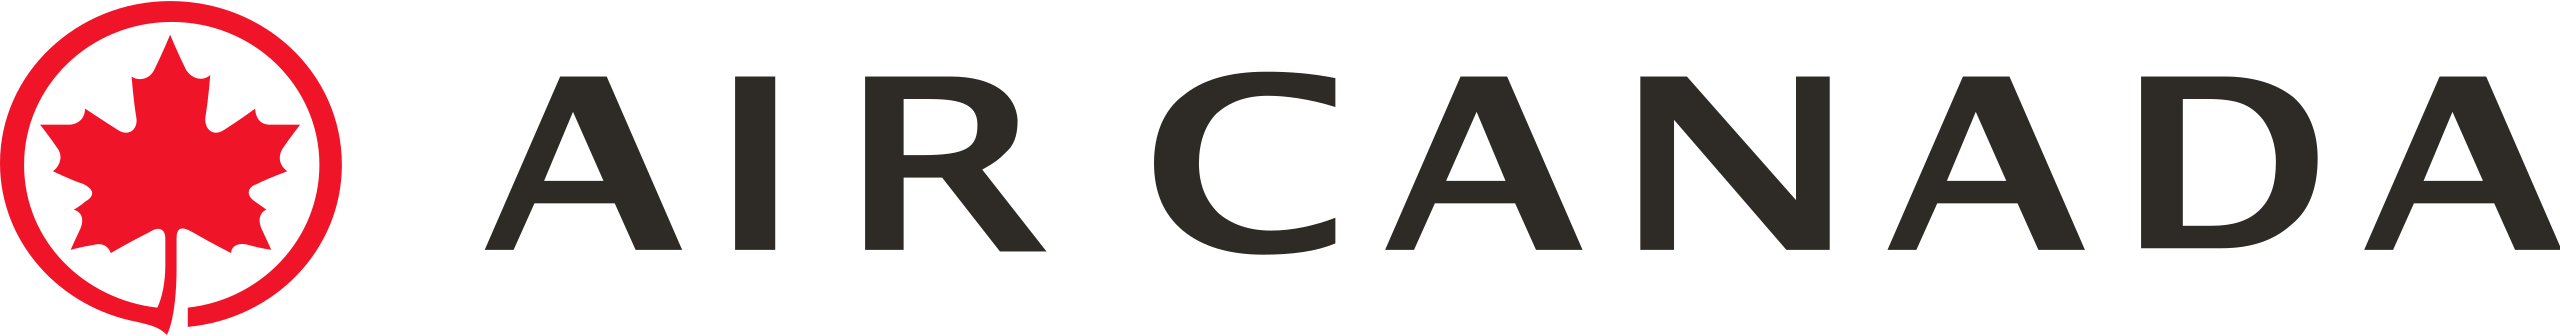 air canada logo